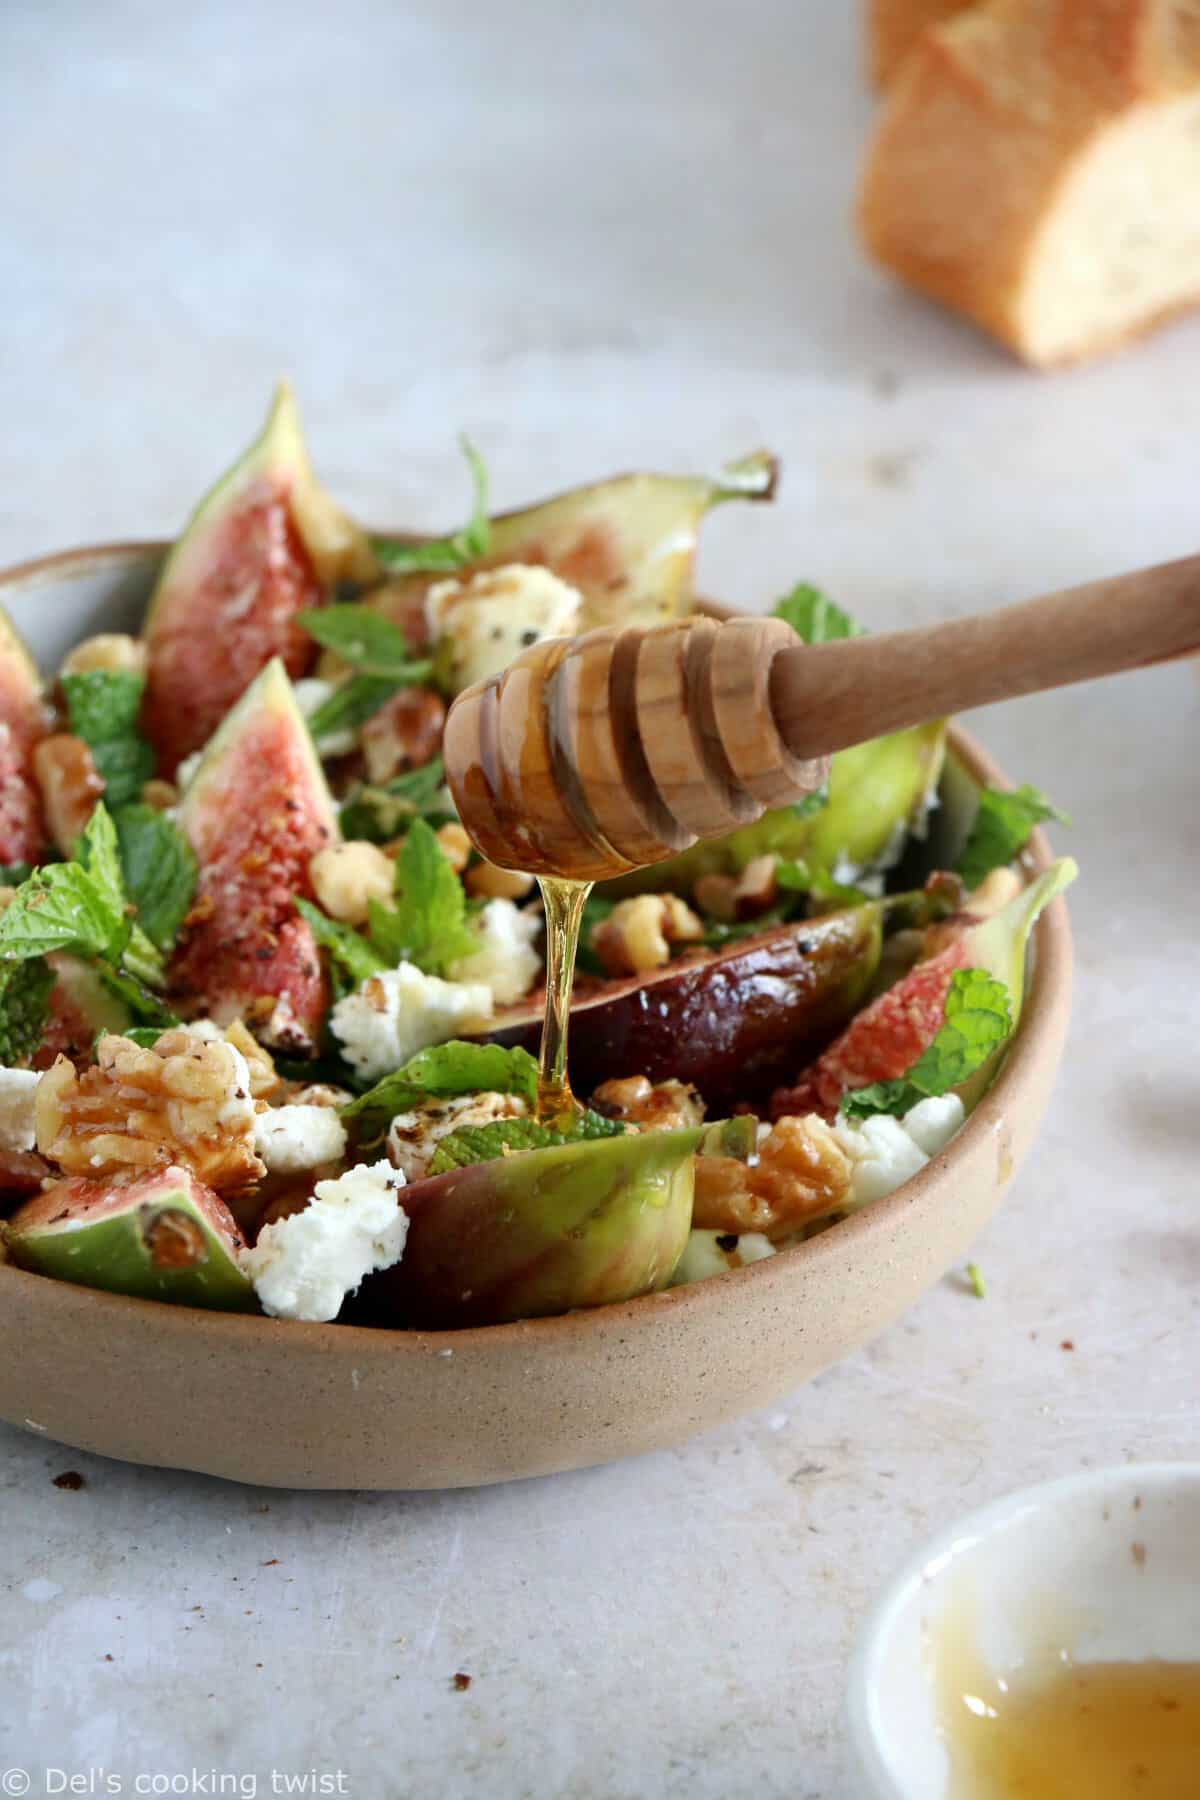 Cette salade de figues, chèvre et noix est d'une simplicité enfantine et regorge de saveurs fraîches et subtiles.